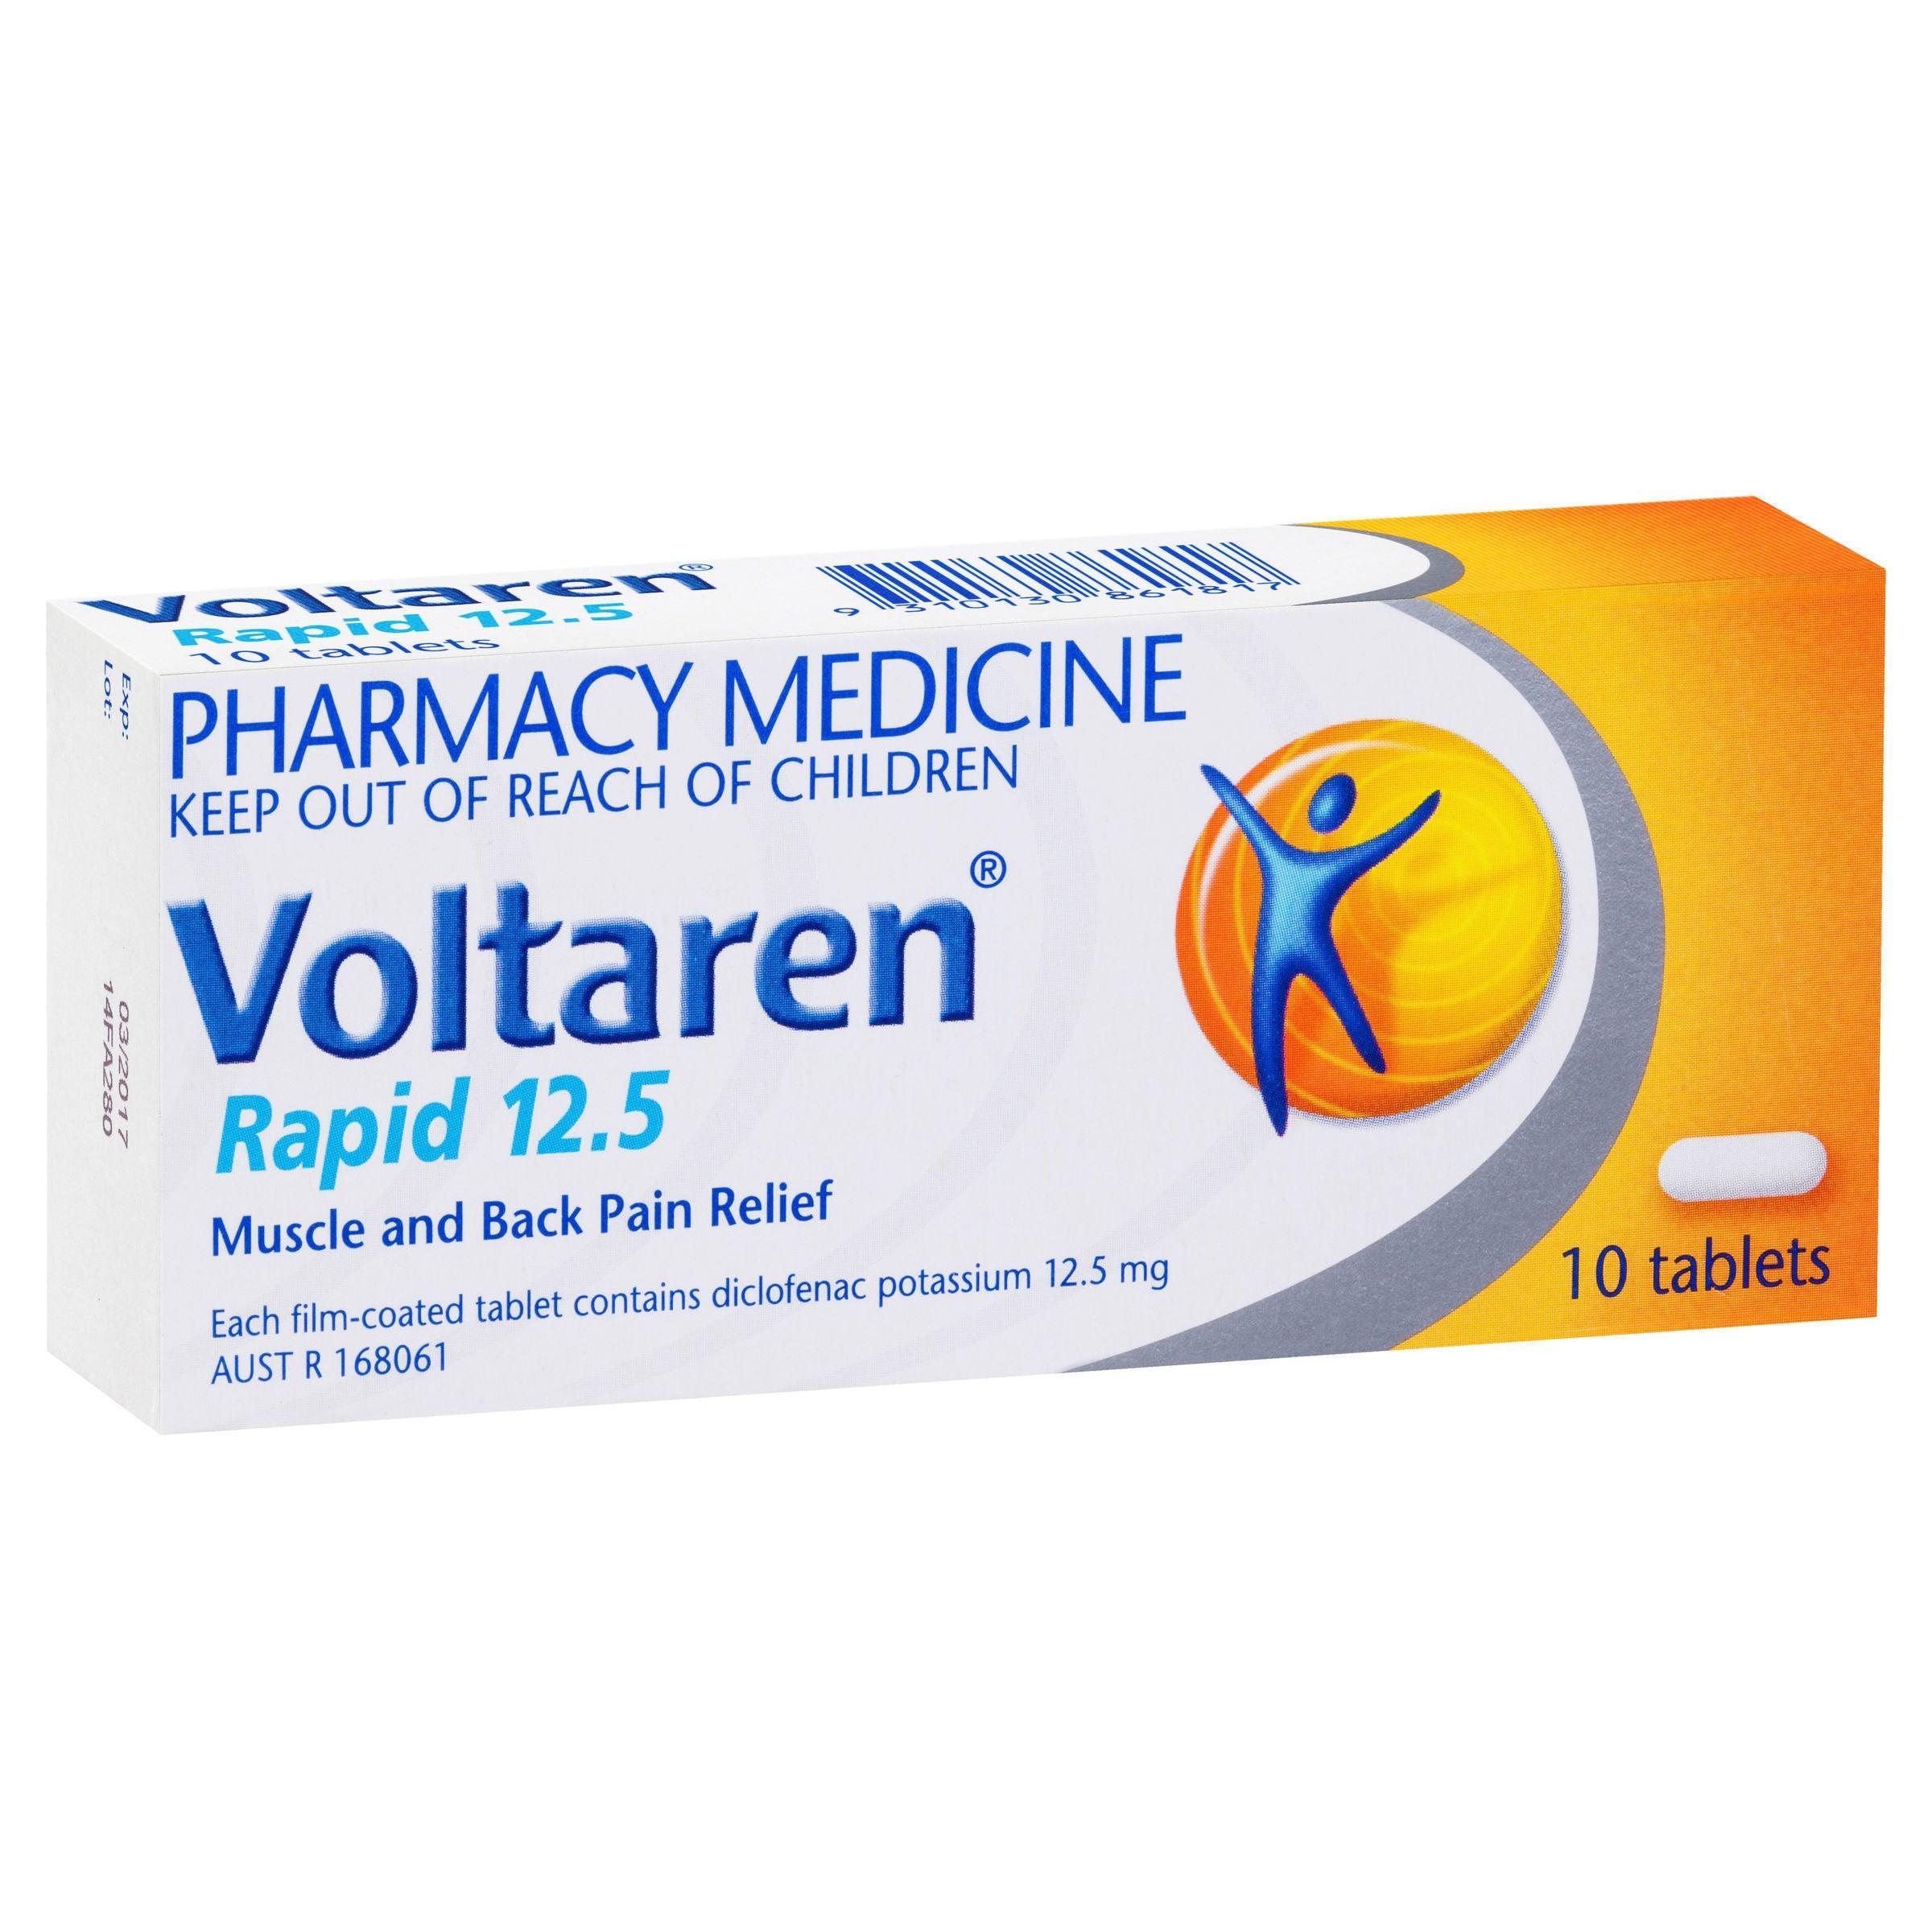 Voltaren Rapid 12.5, Pain Relief 10 Tablets